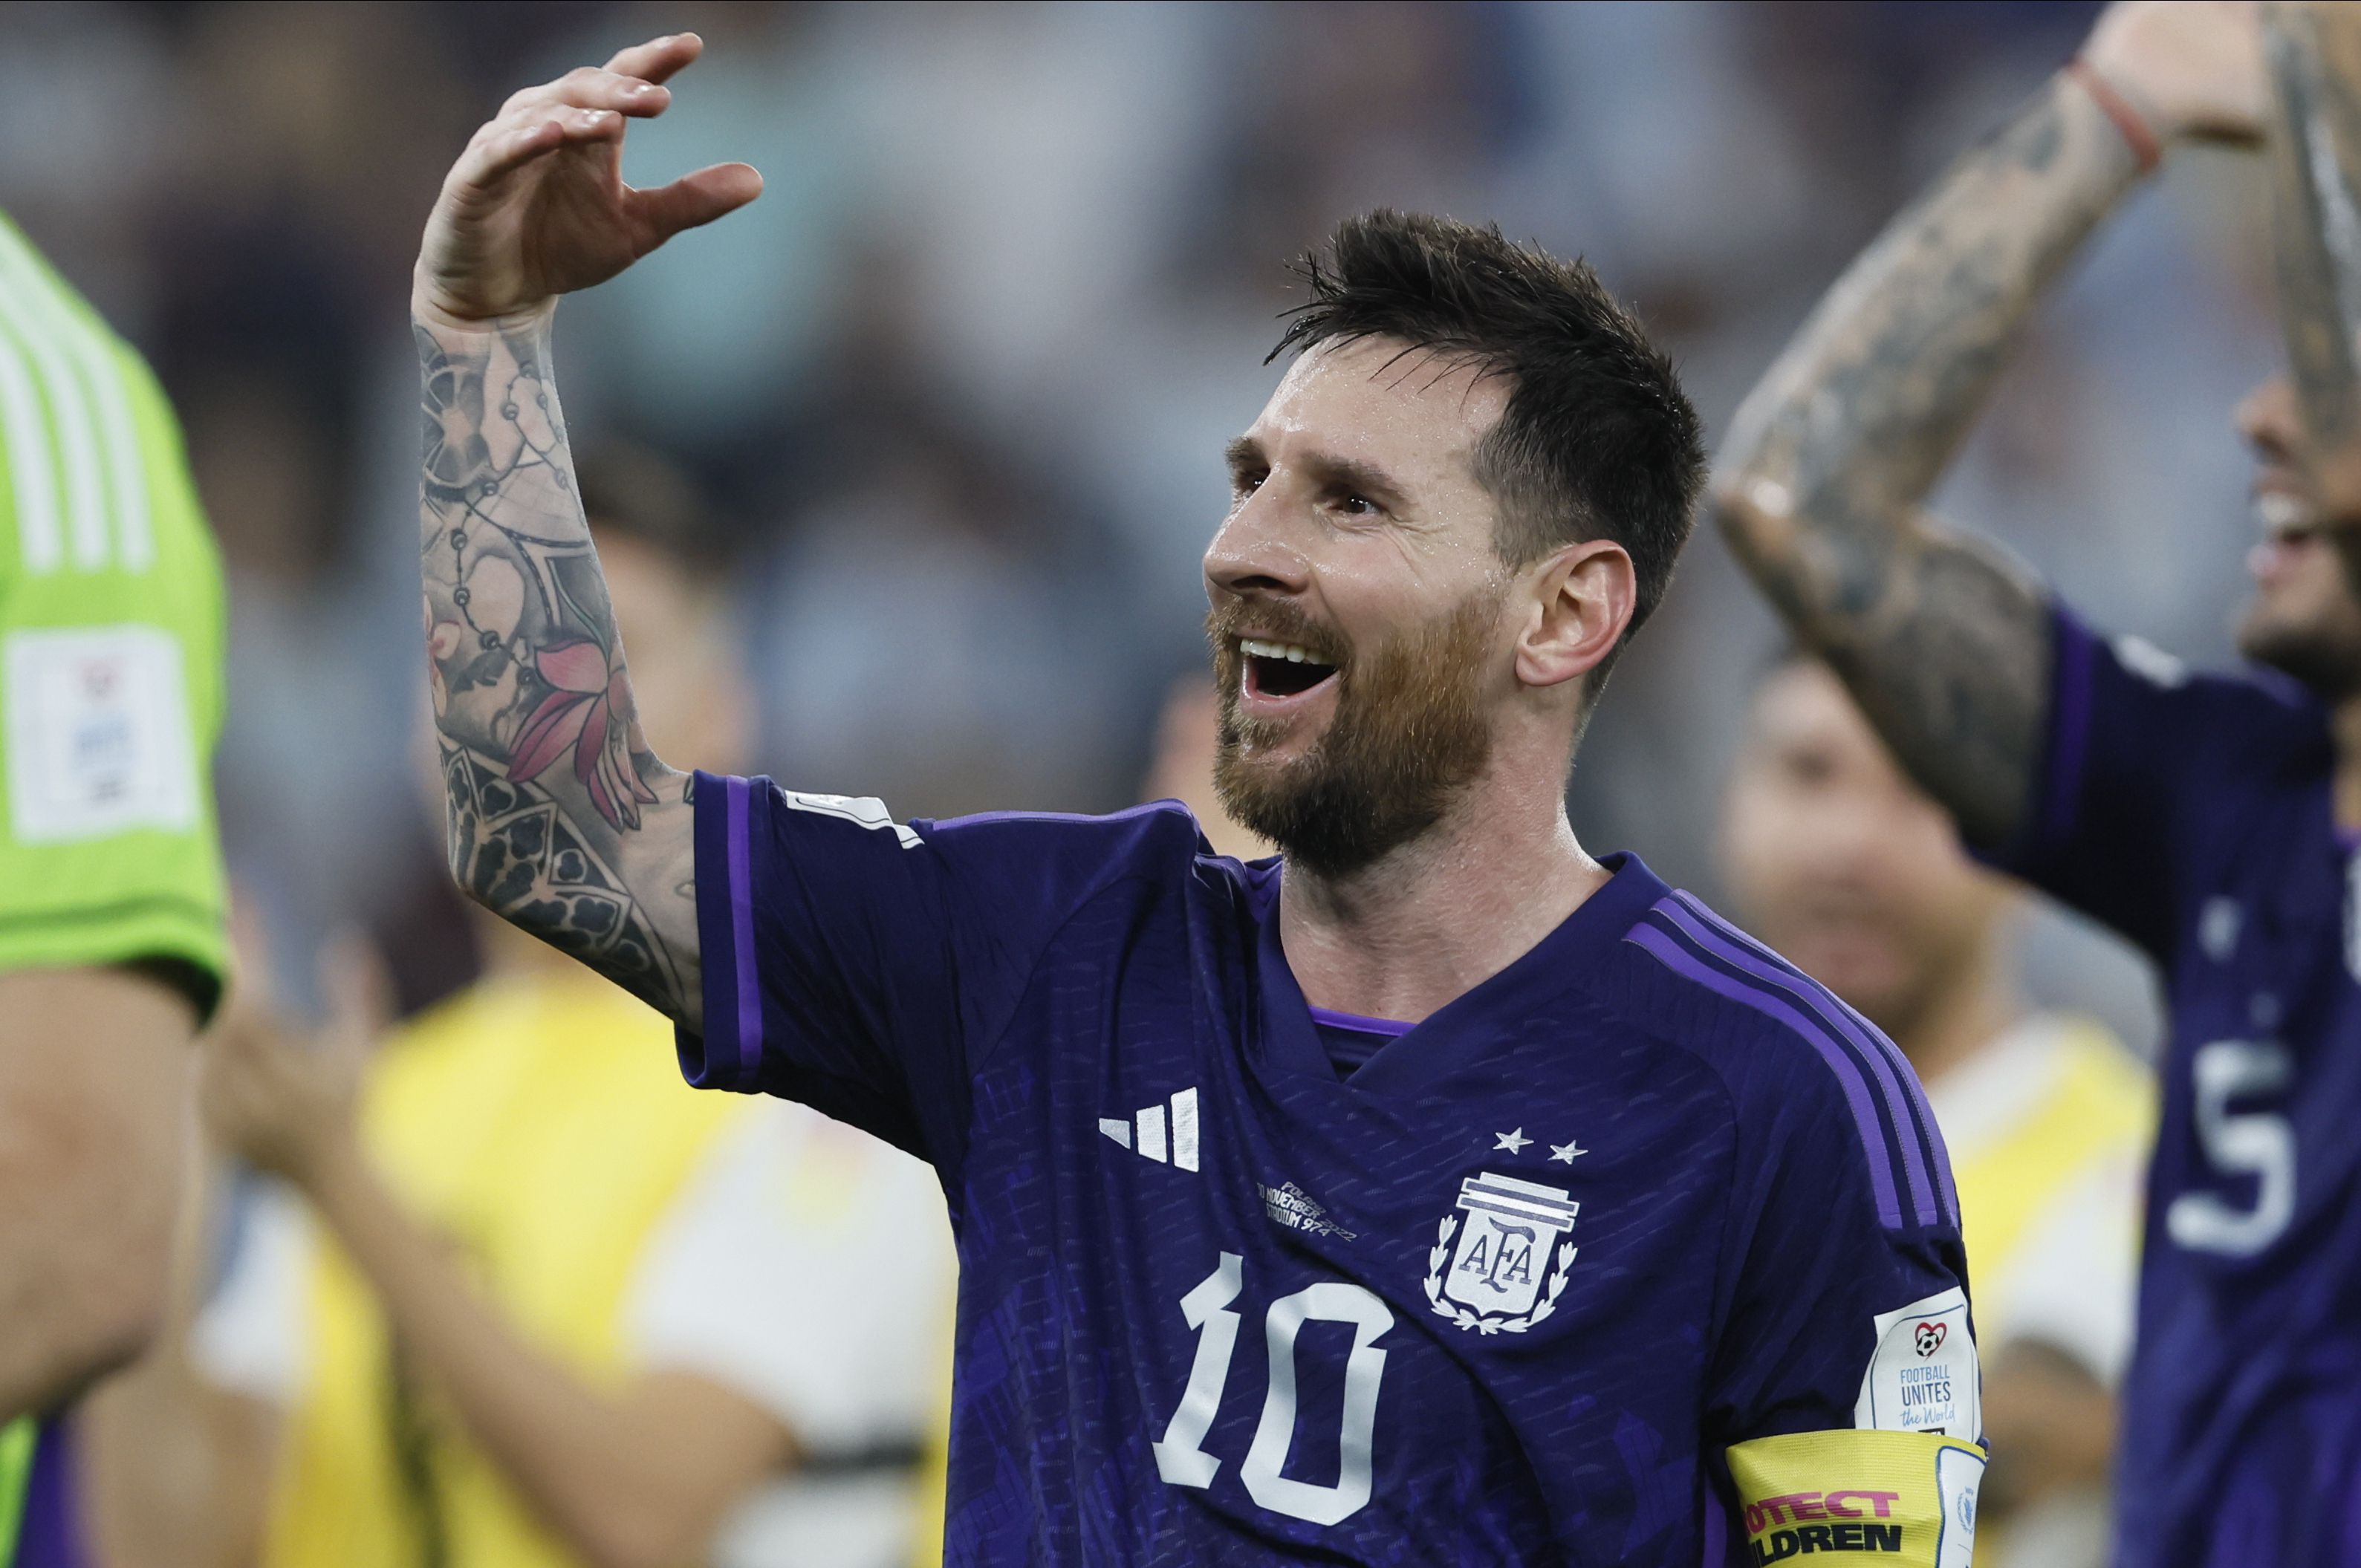 Sportal vébé TV: ,,Szurkolok hogy az argentinok bejussanak a döntőbe” – Nagy Anett